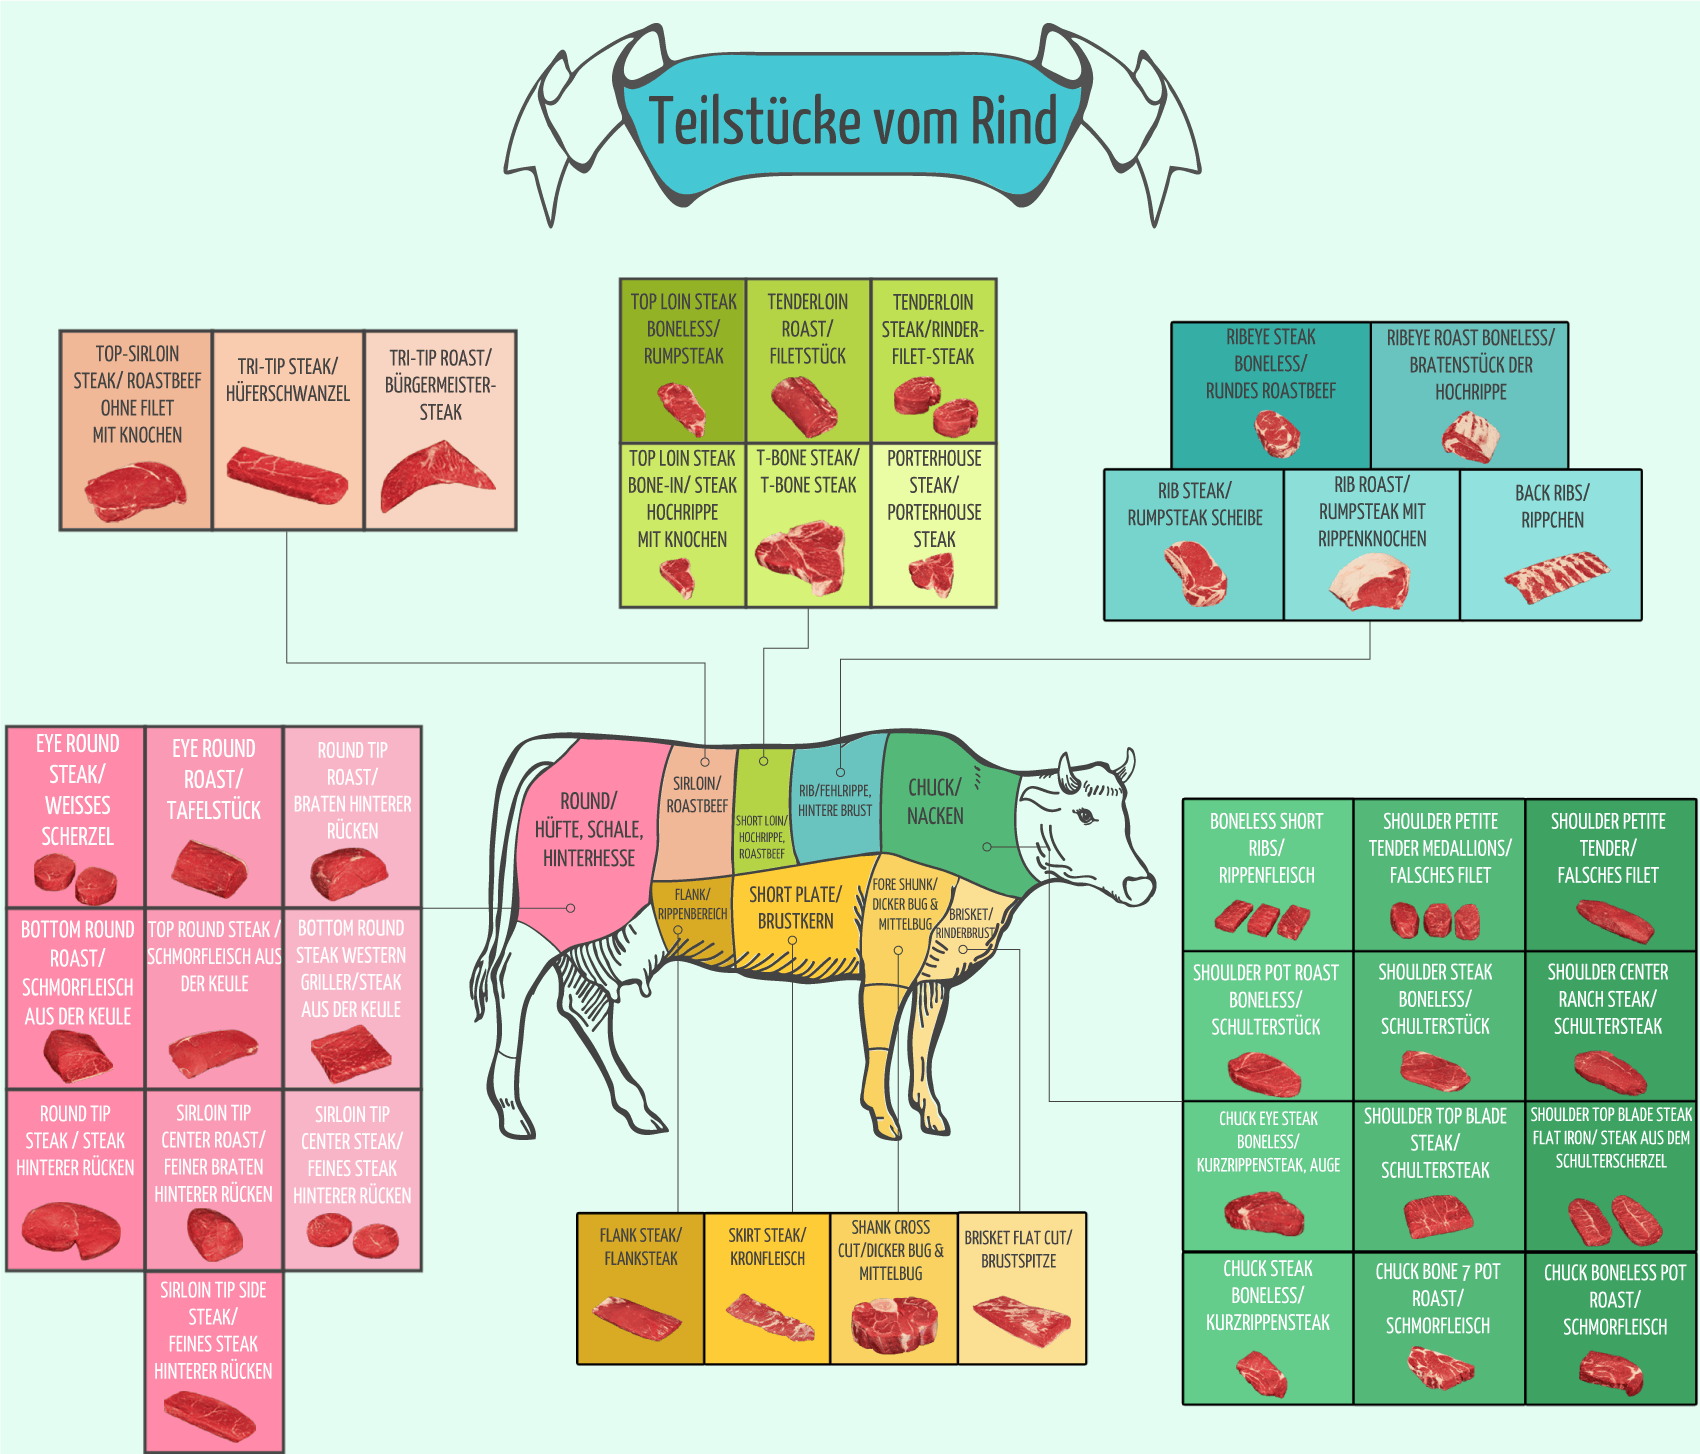 Teilstücke vom Rind - Infografik